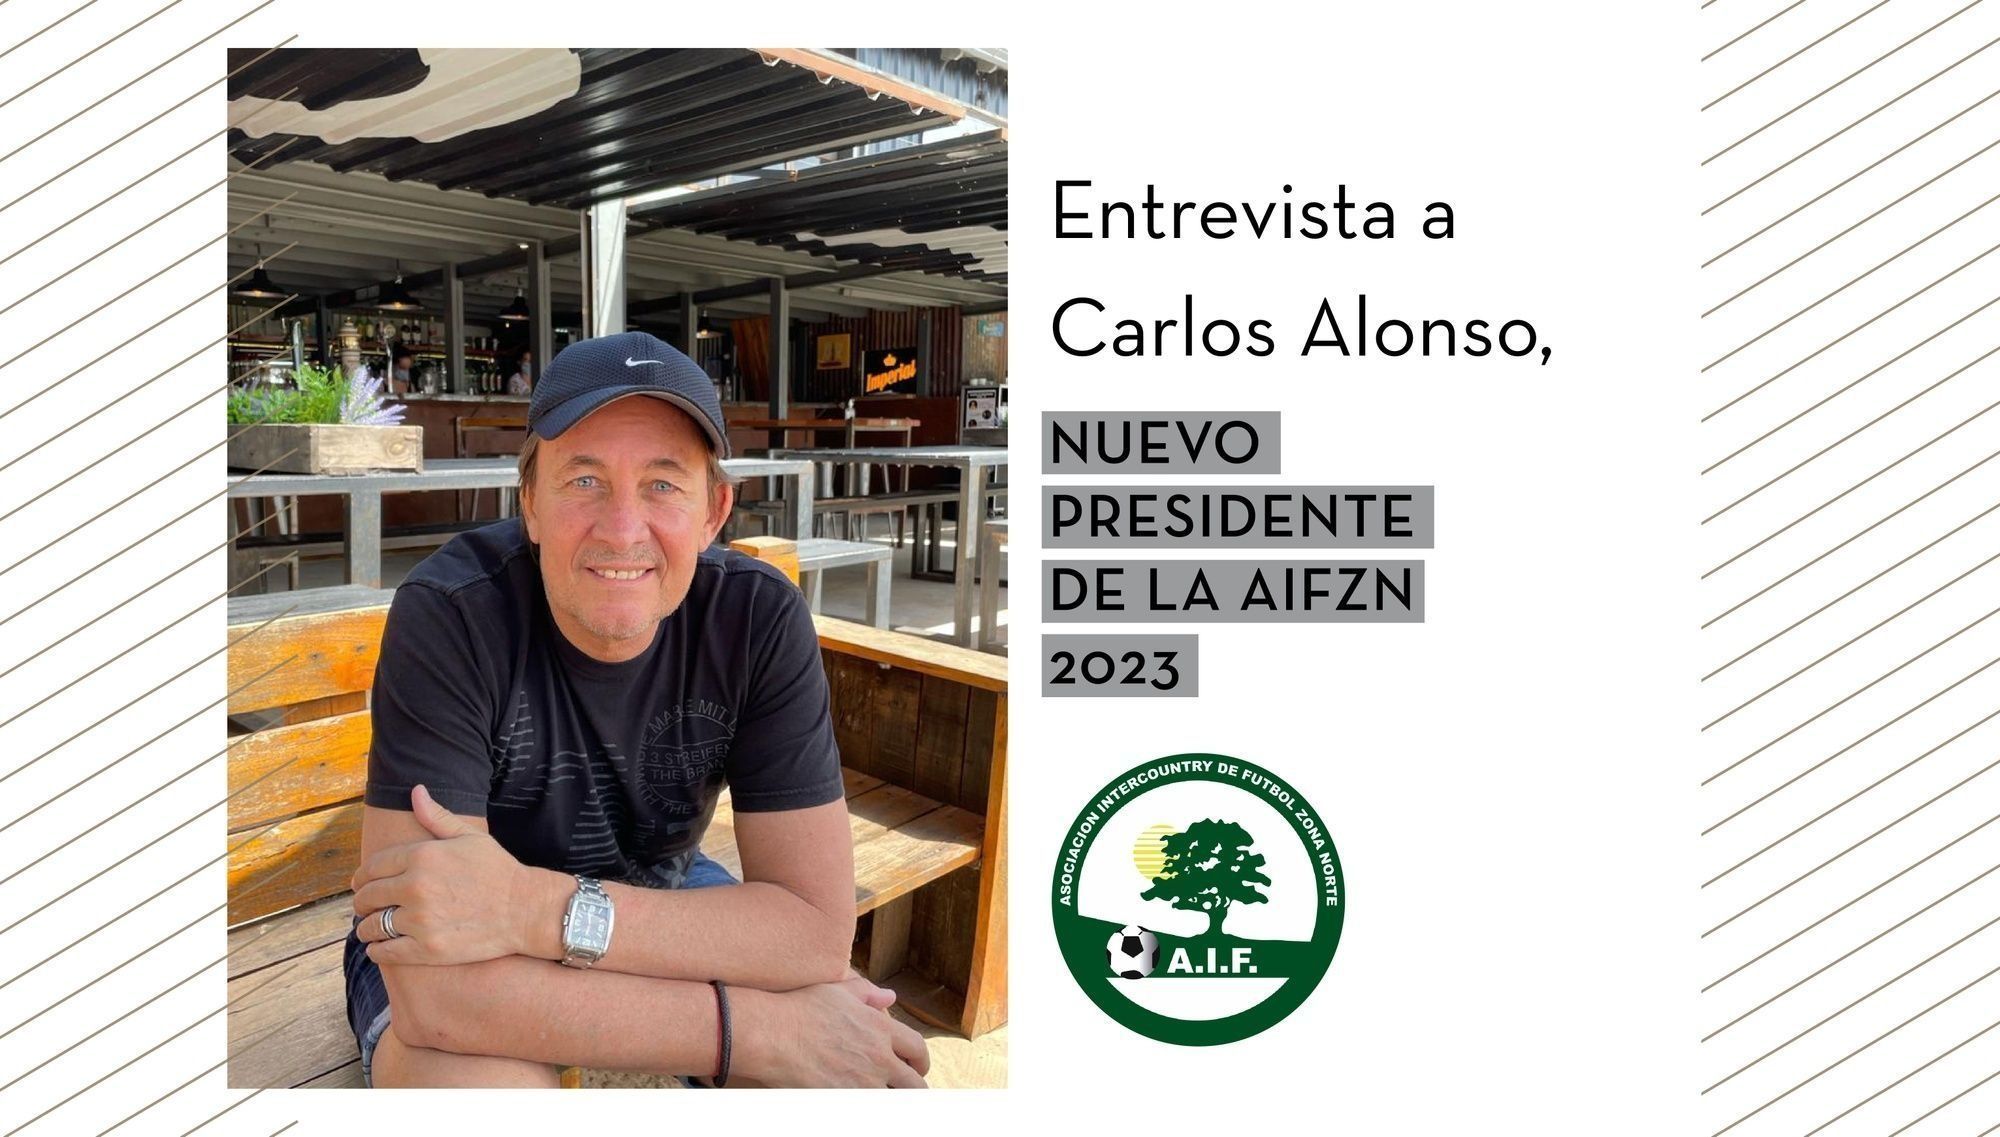 Entrevista a Carlos Alonso, el nuevo presidente de la AIFZN